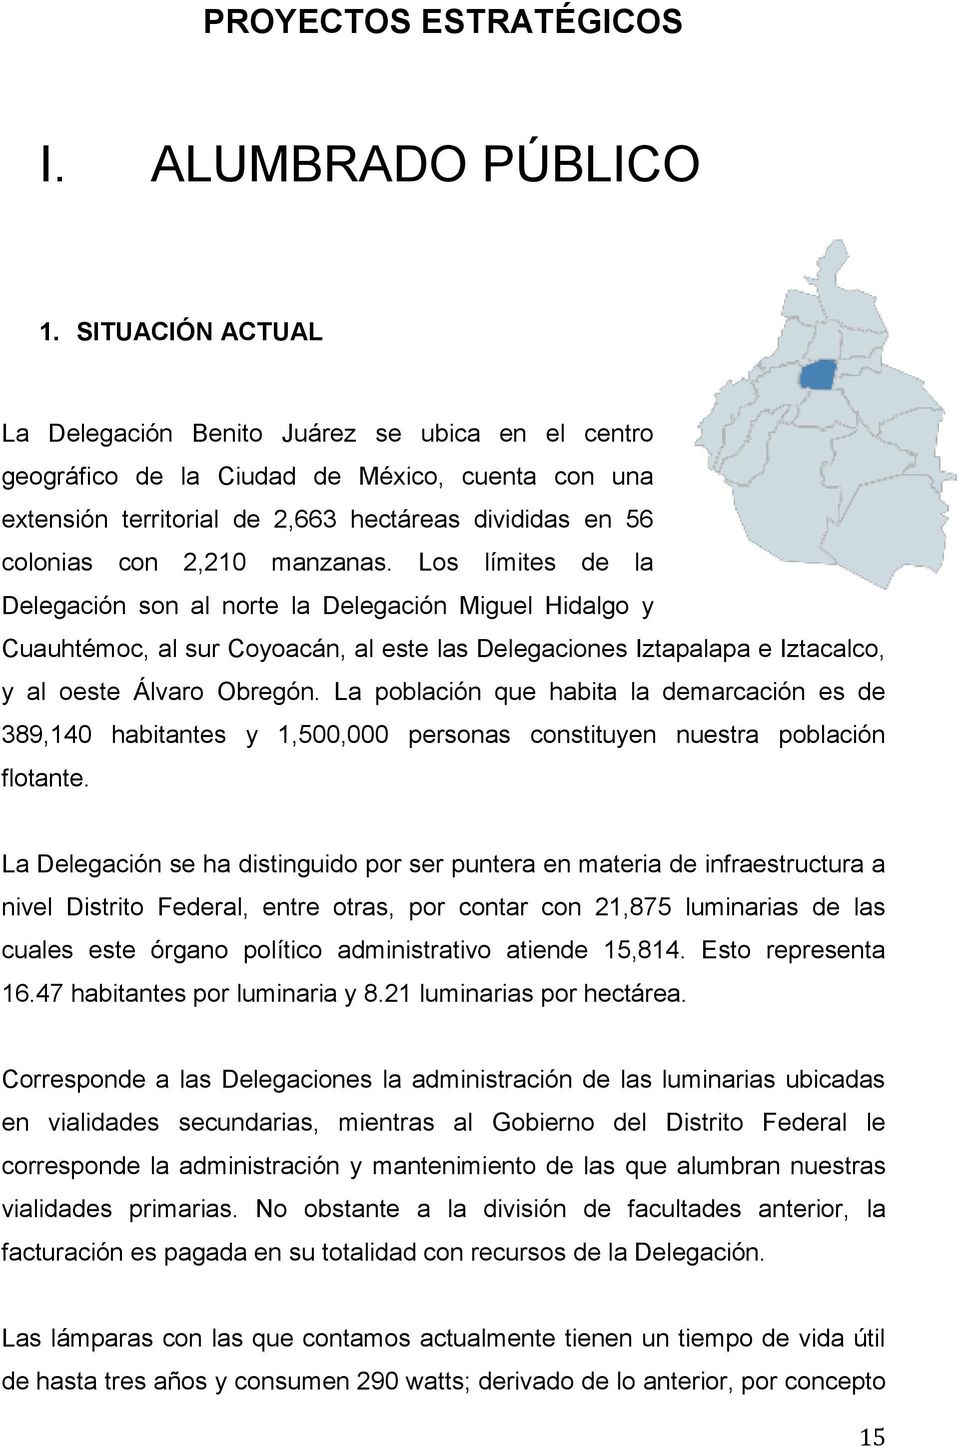 manzanas. Los límites de la Delegación son al norte la Delegación Miguel Hidalgo y Cuauhtémoc, al sur Coyoacán, al este las Delegaciones Iztapalapa e Iztacalco, y al oeste Álvaro Obregón.